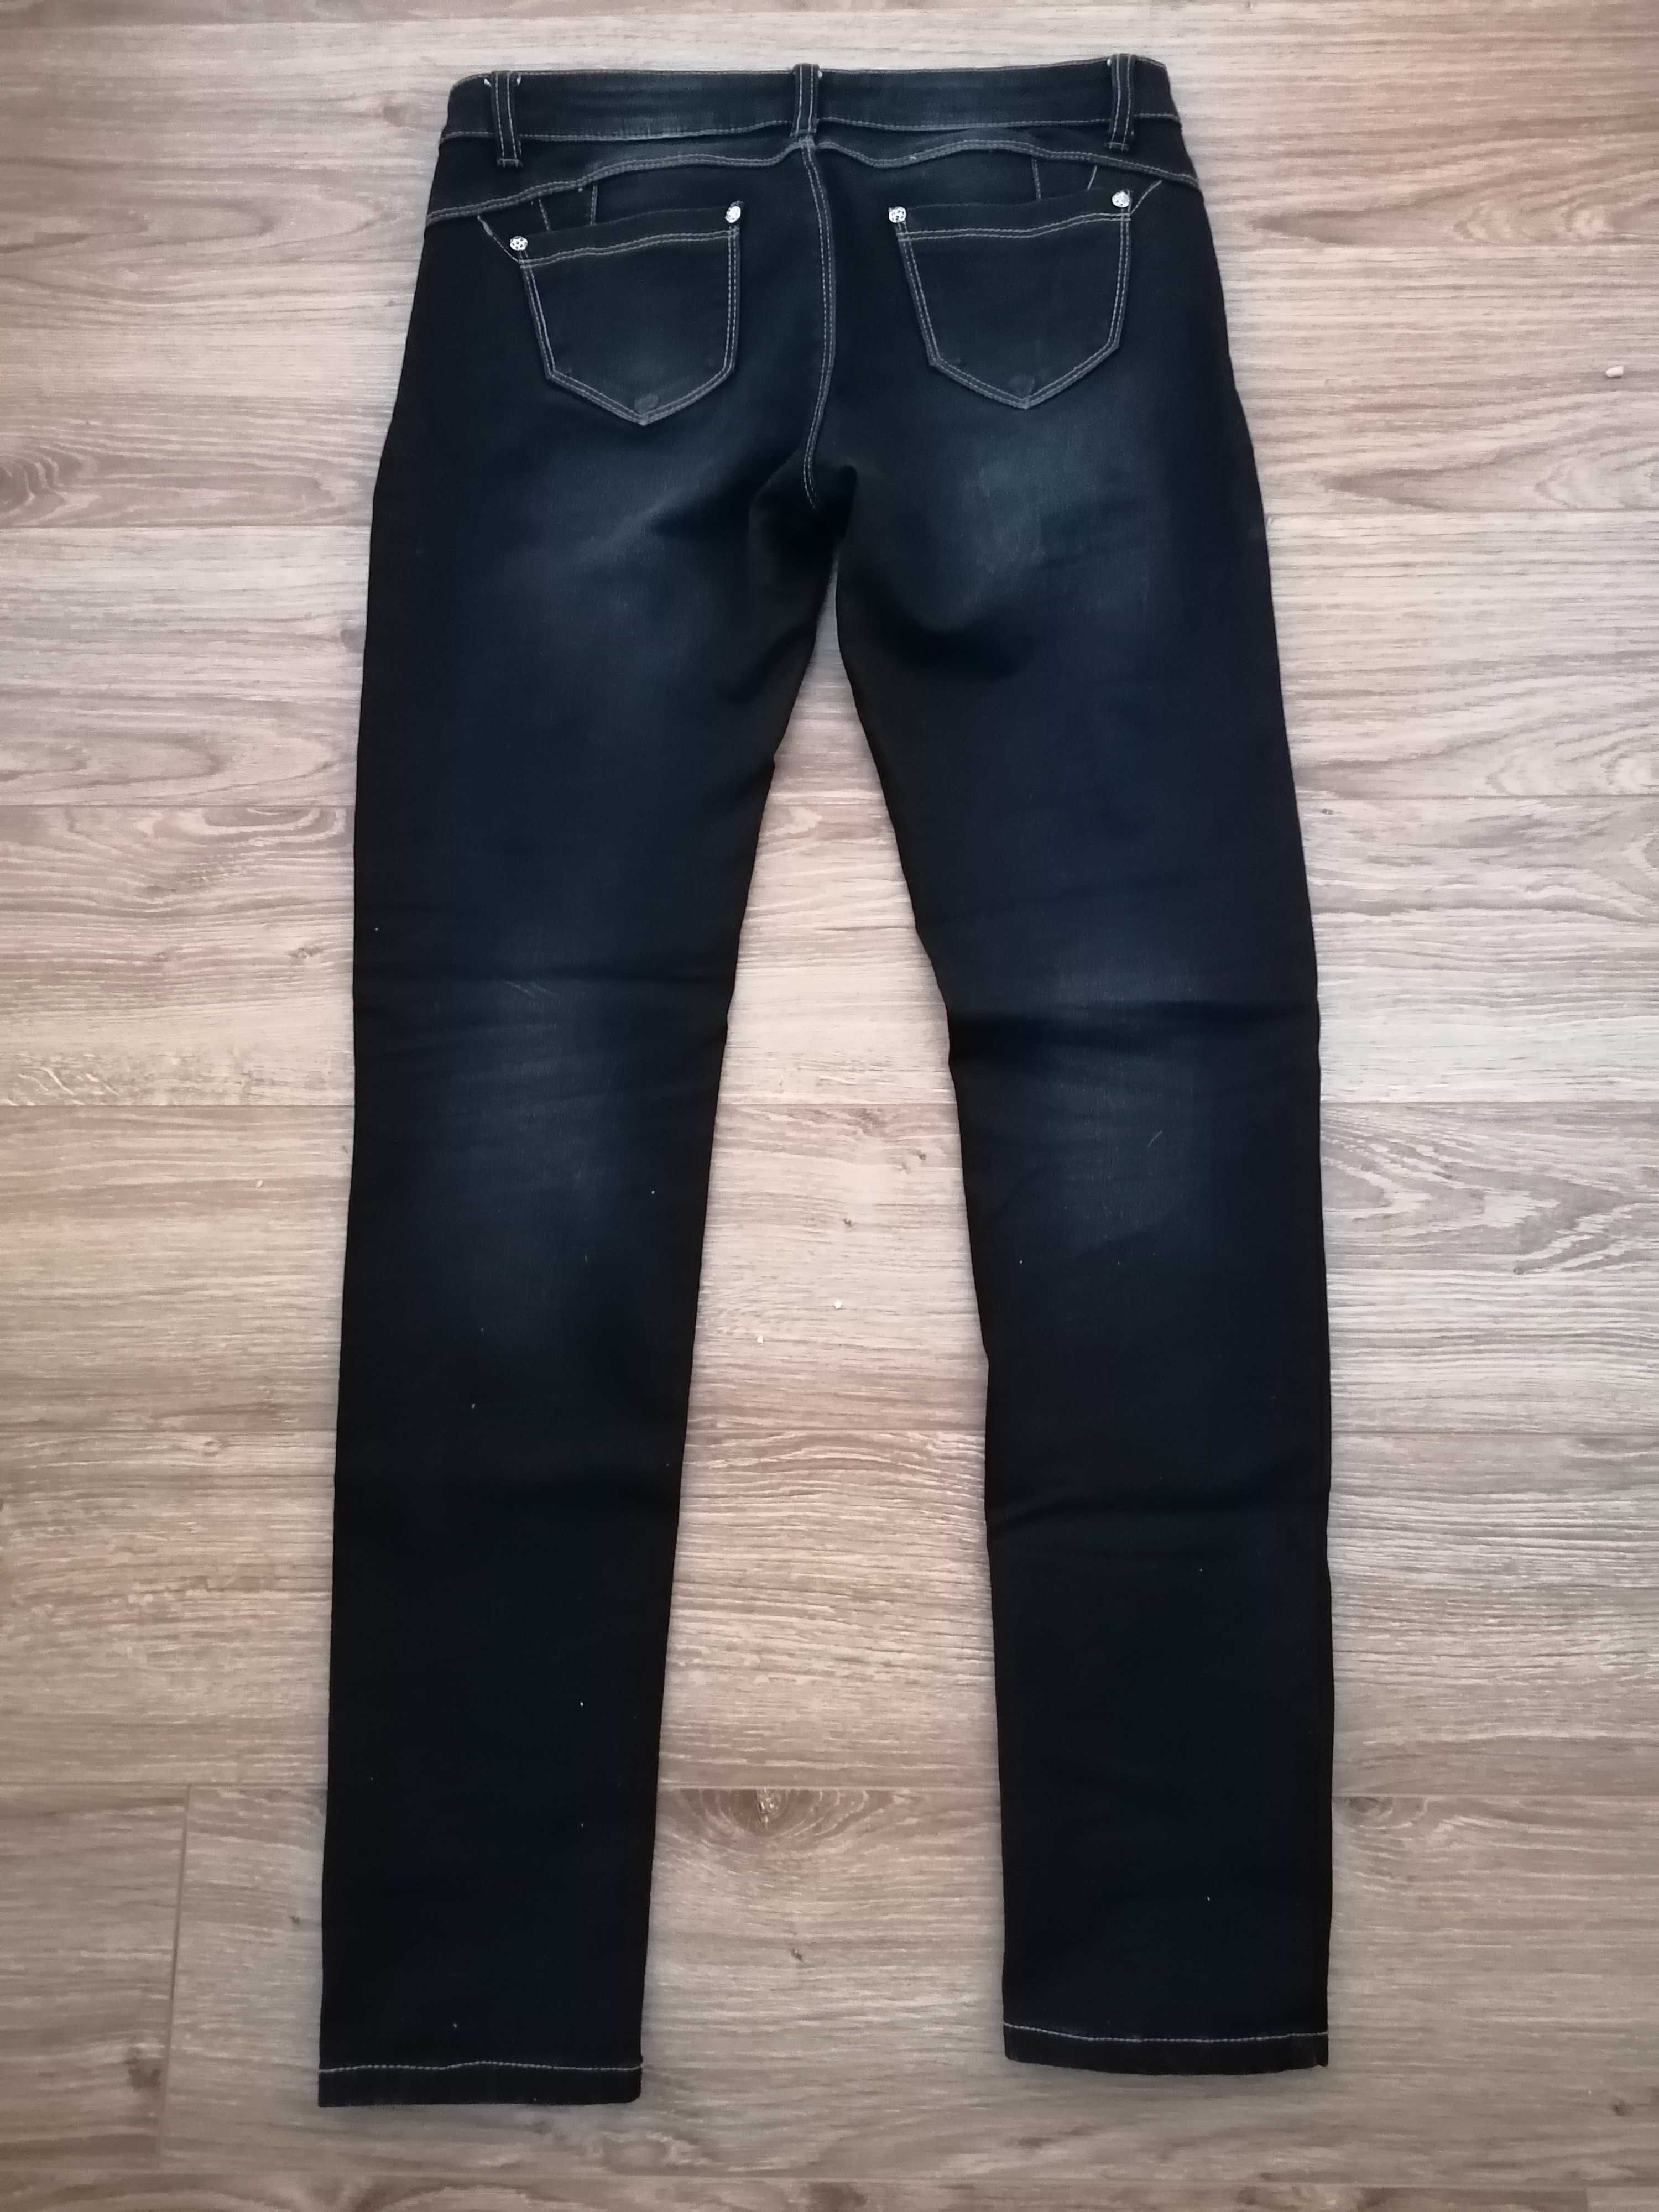 Elastyczne spodnie jeansowe XL (42) jak nowe